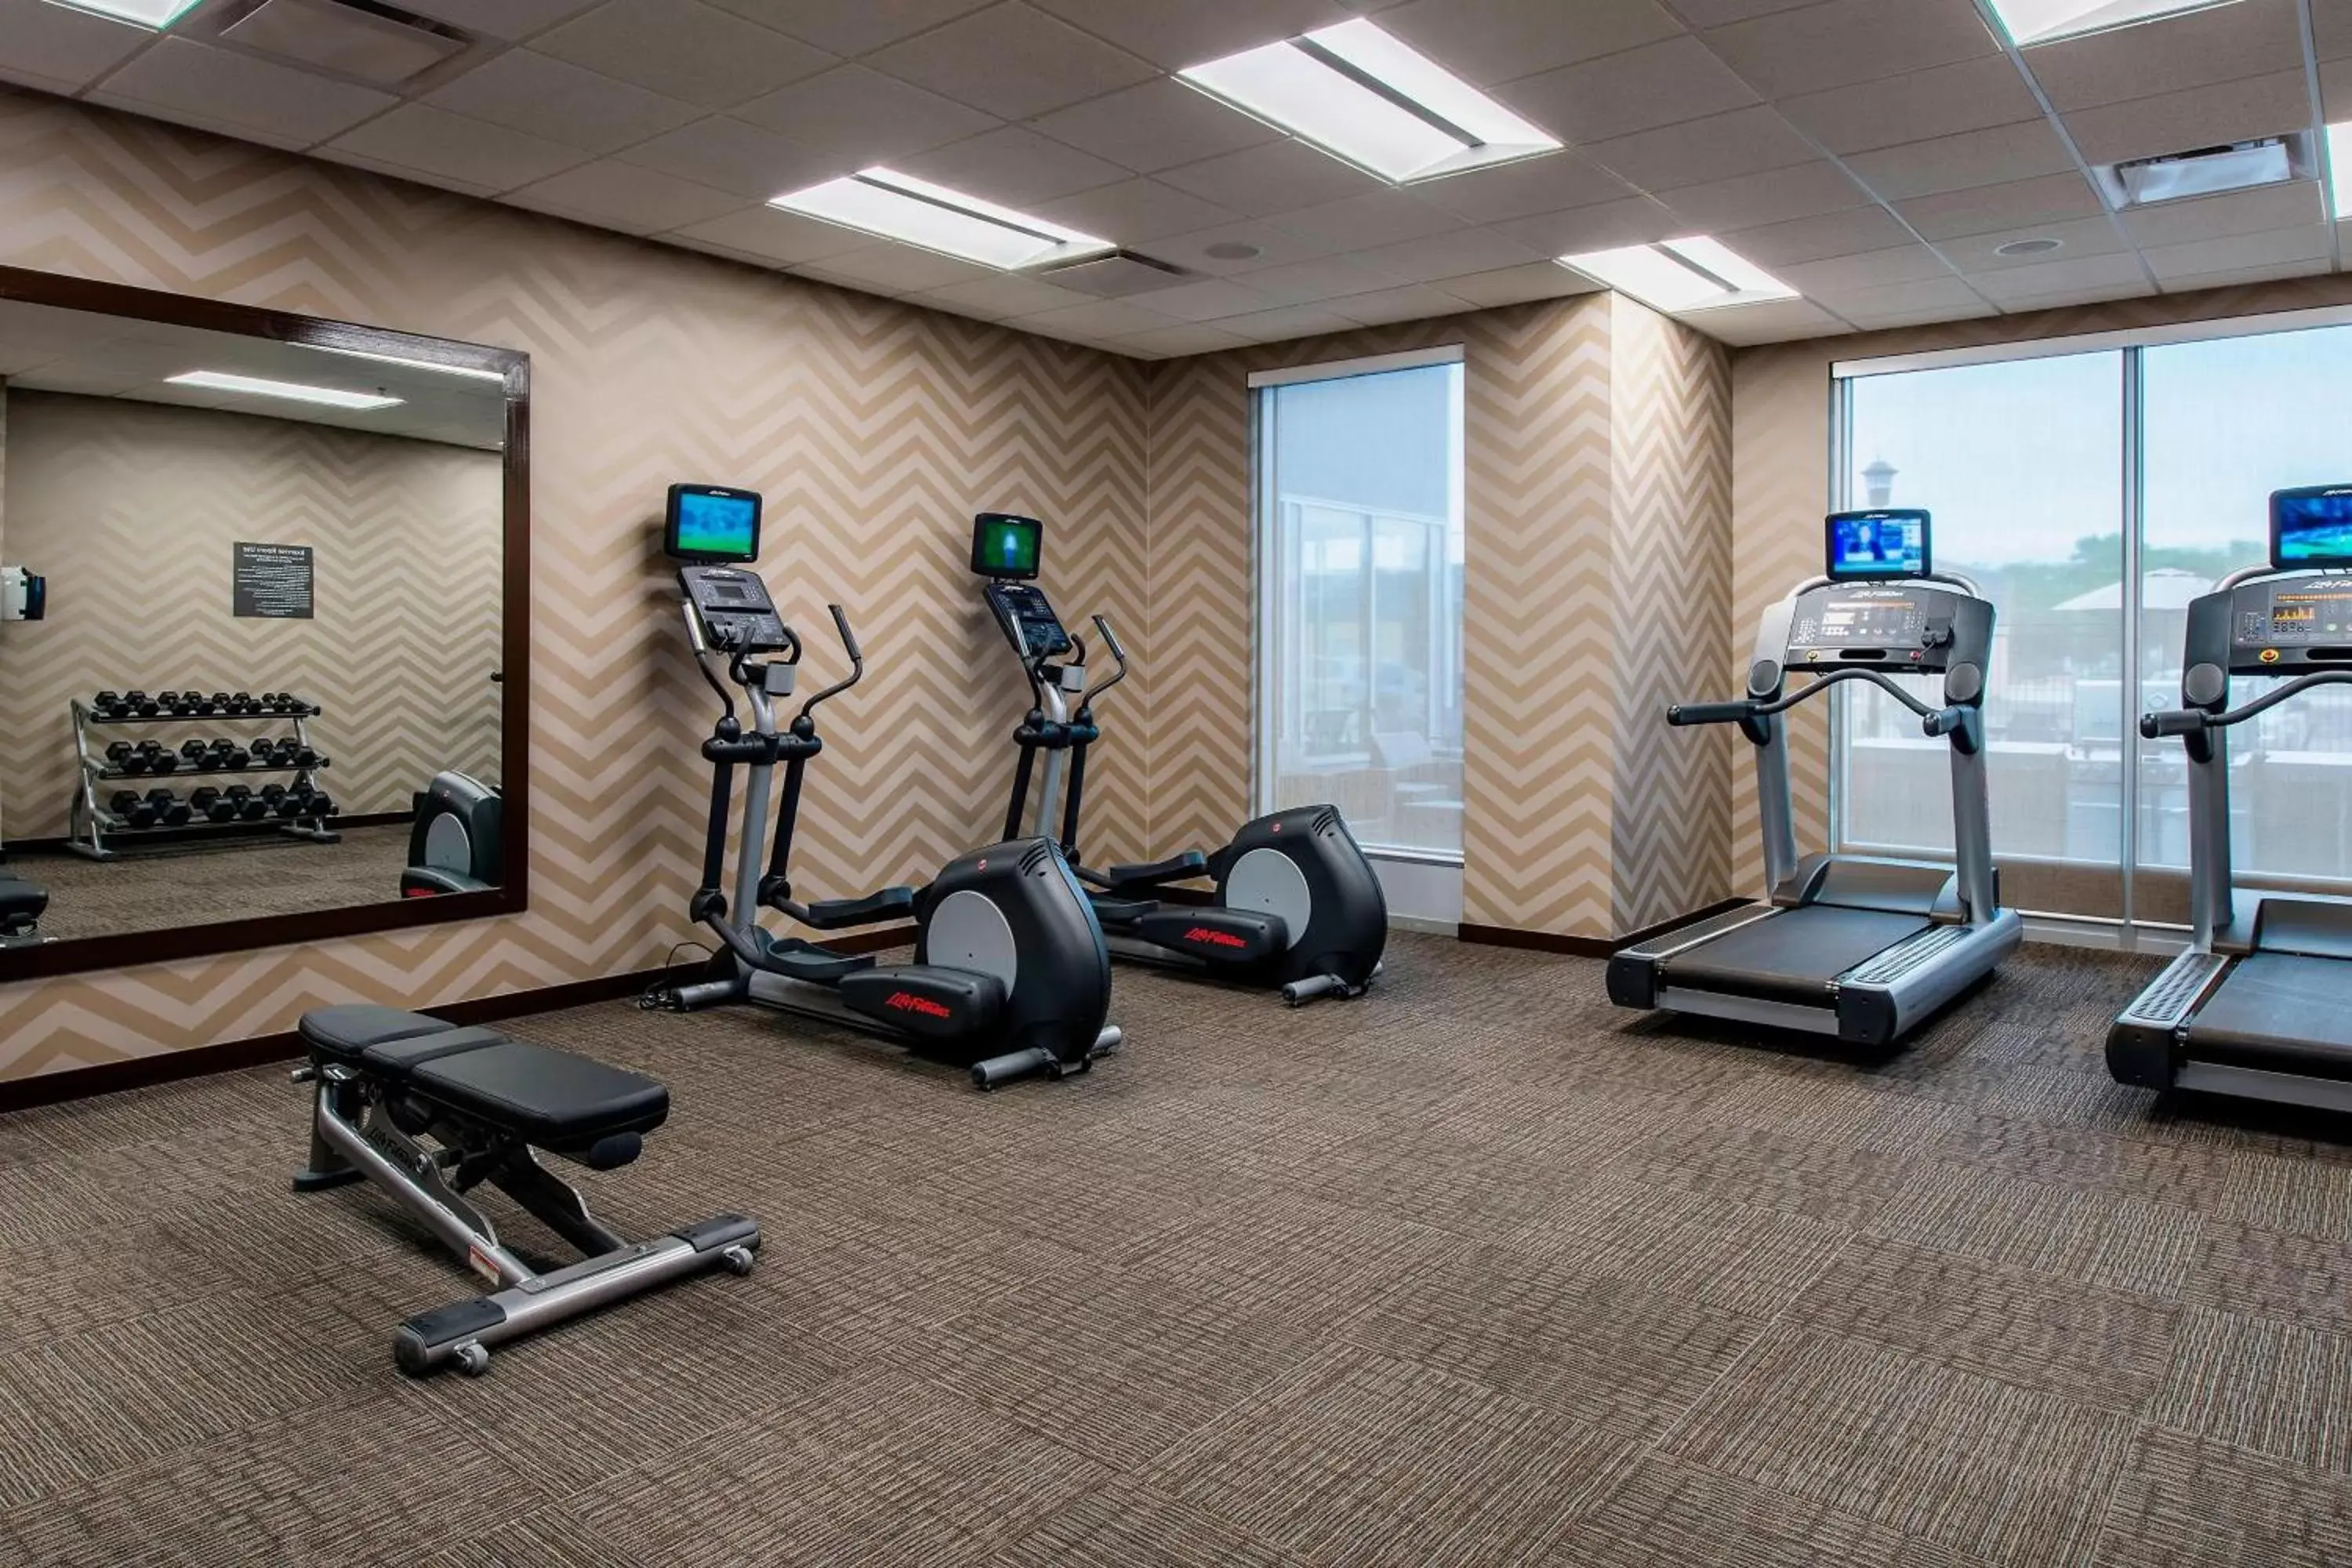 Fitness centre/facilities, Fitness Center/Facilities in Residence Inn by Marriott Regina